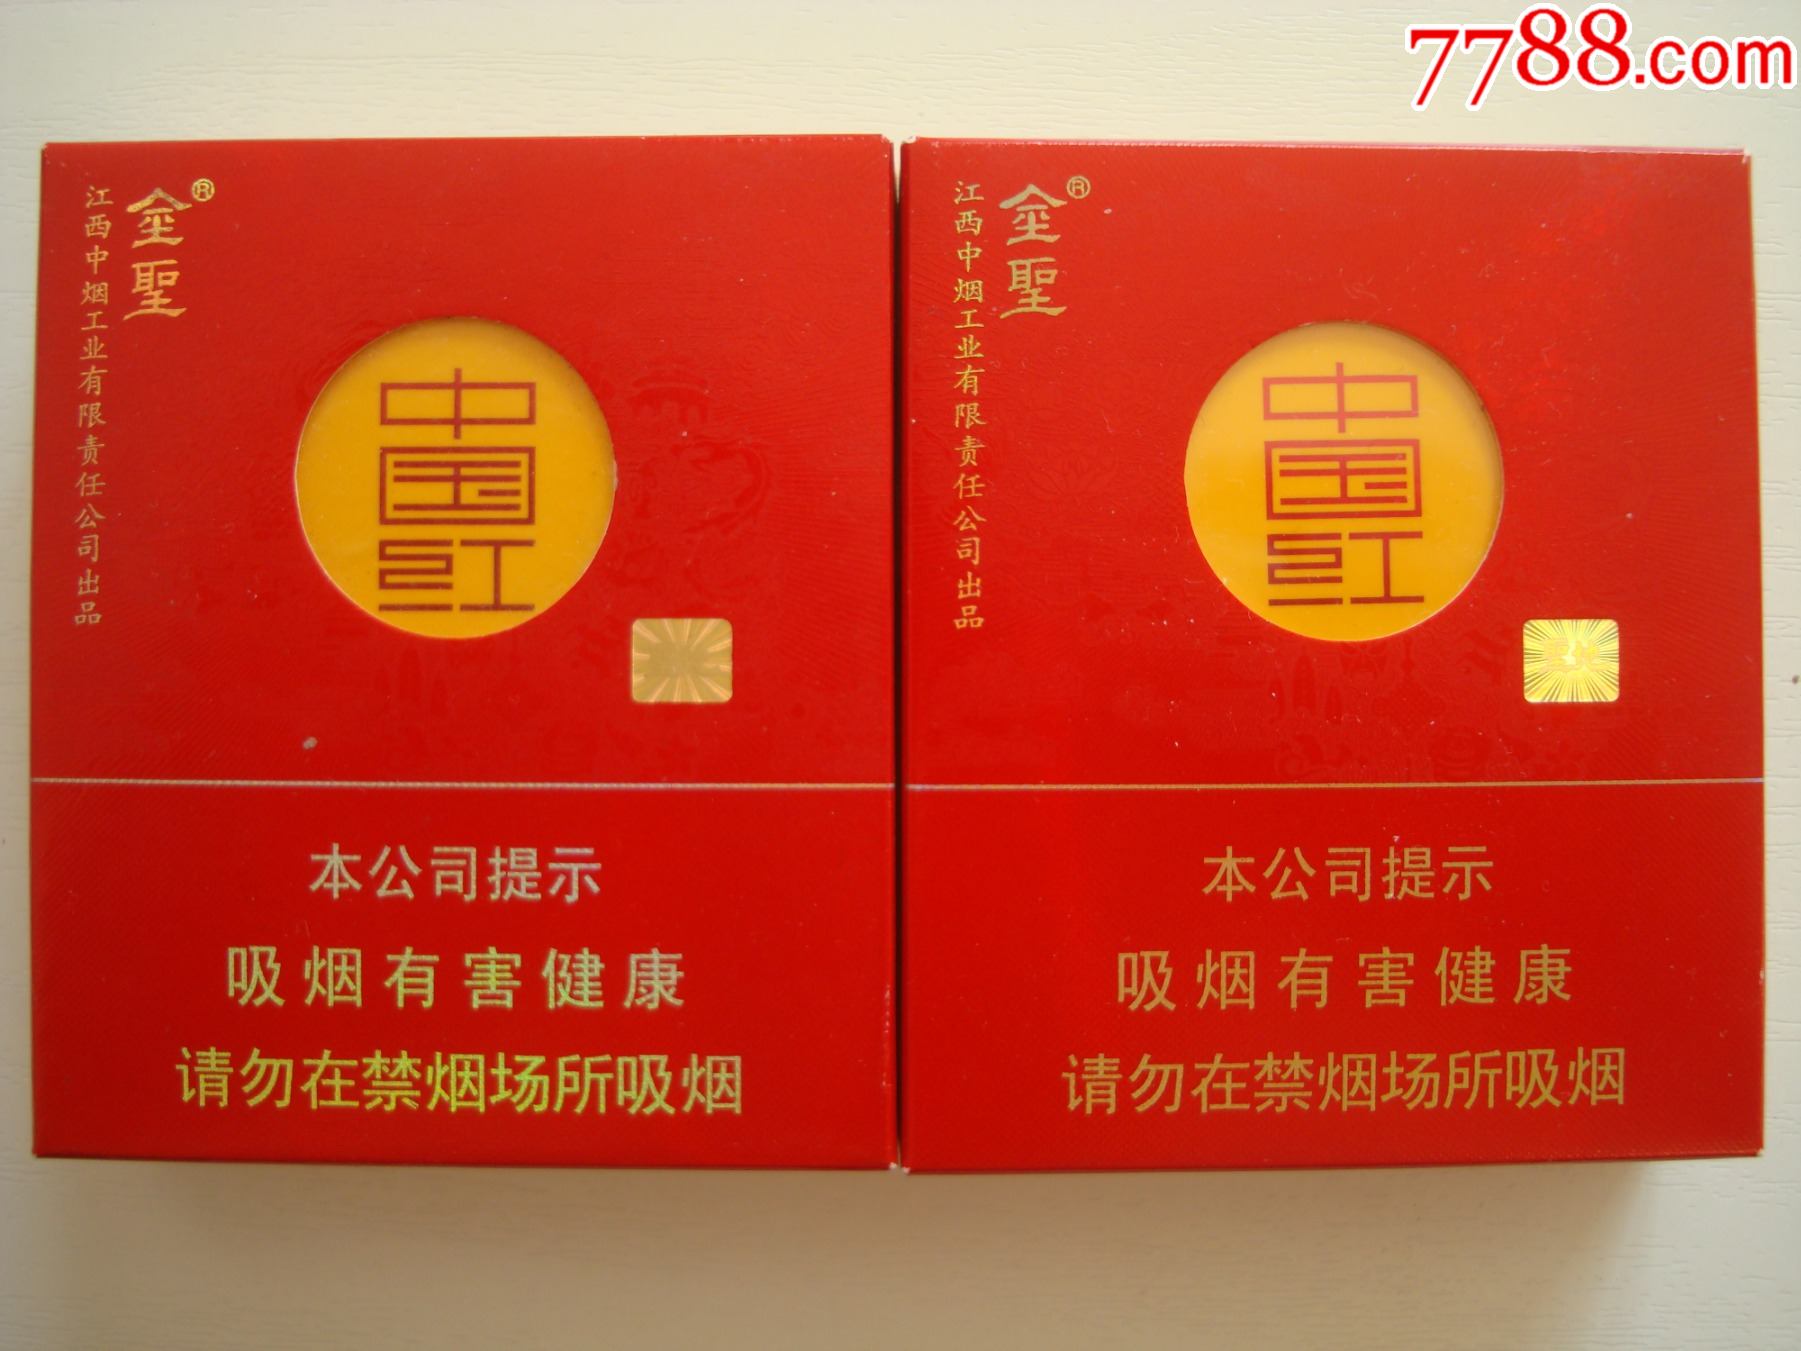 中国红香烟 金圣图片